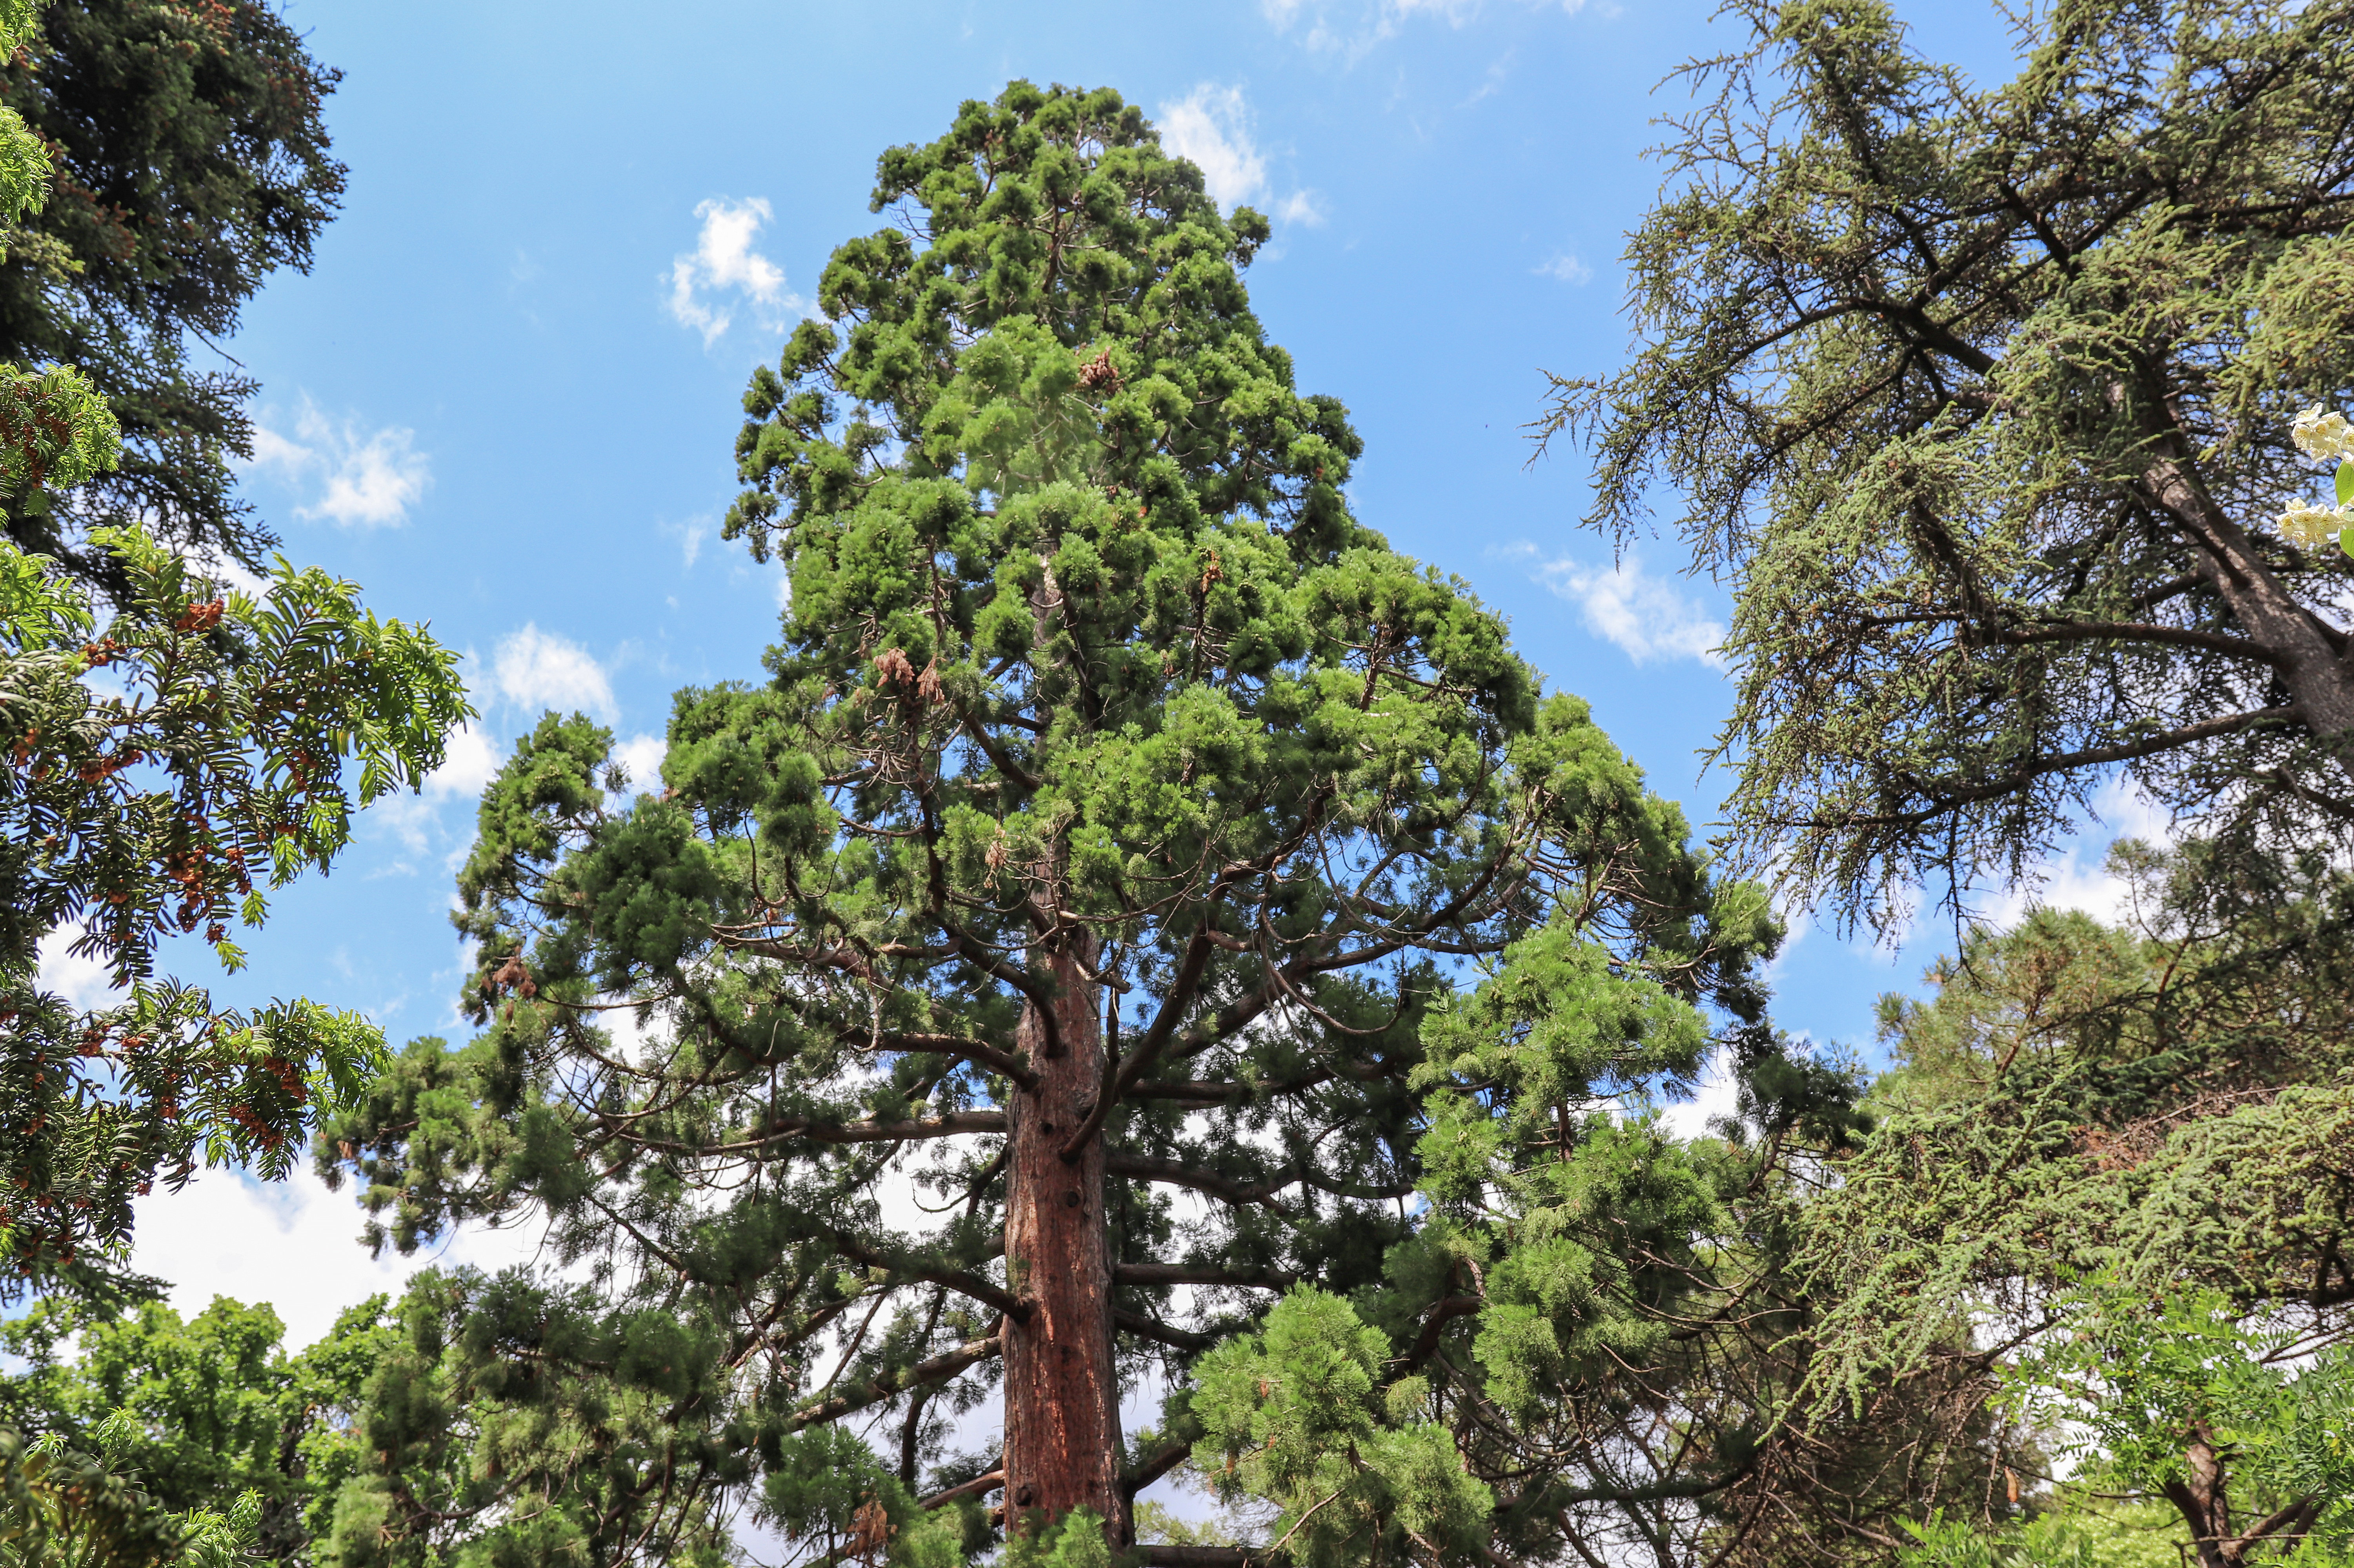 The tallest tree in the Nikitsky Botanical Garden - giant sequoiadendron